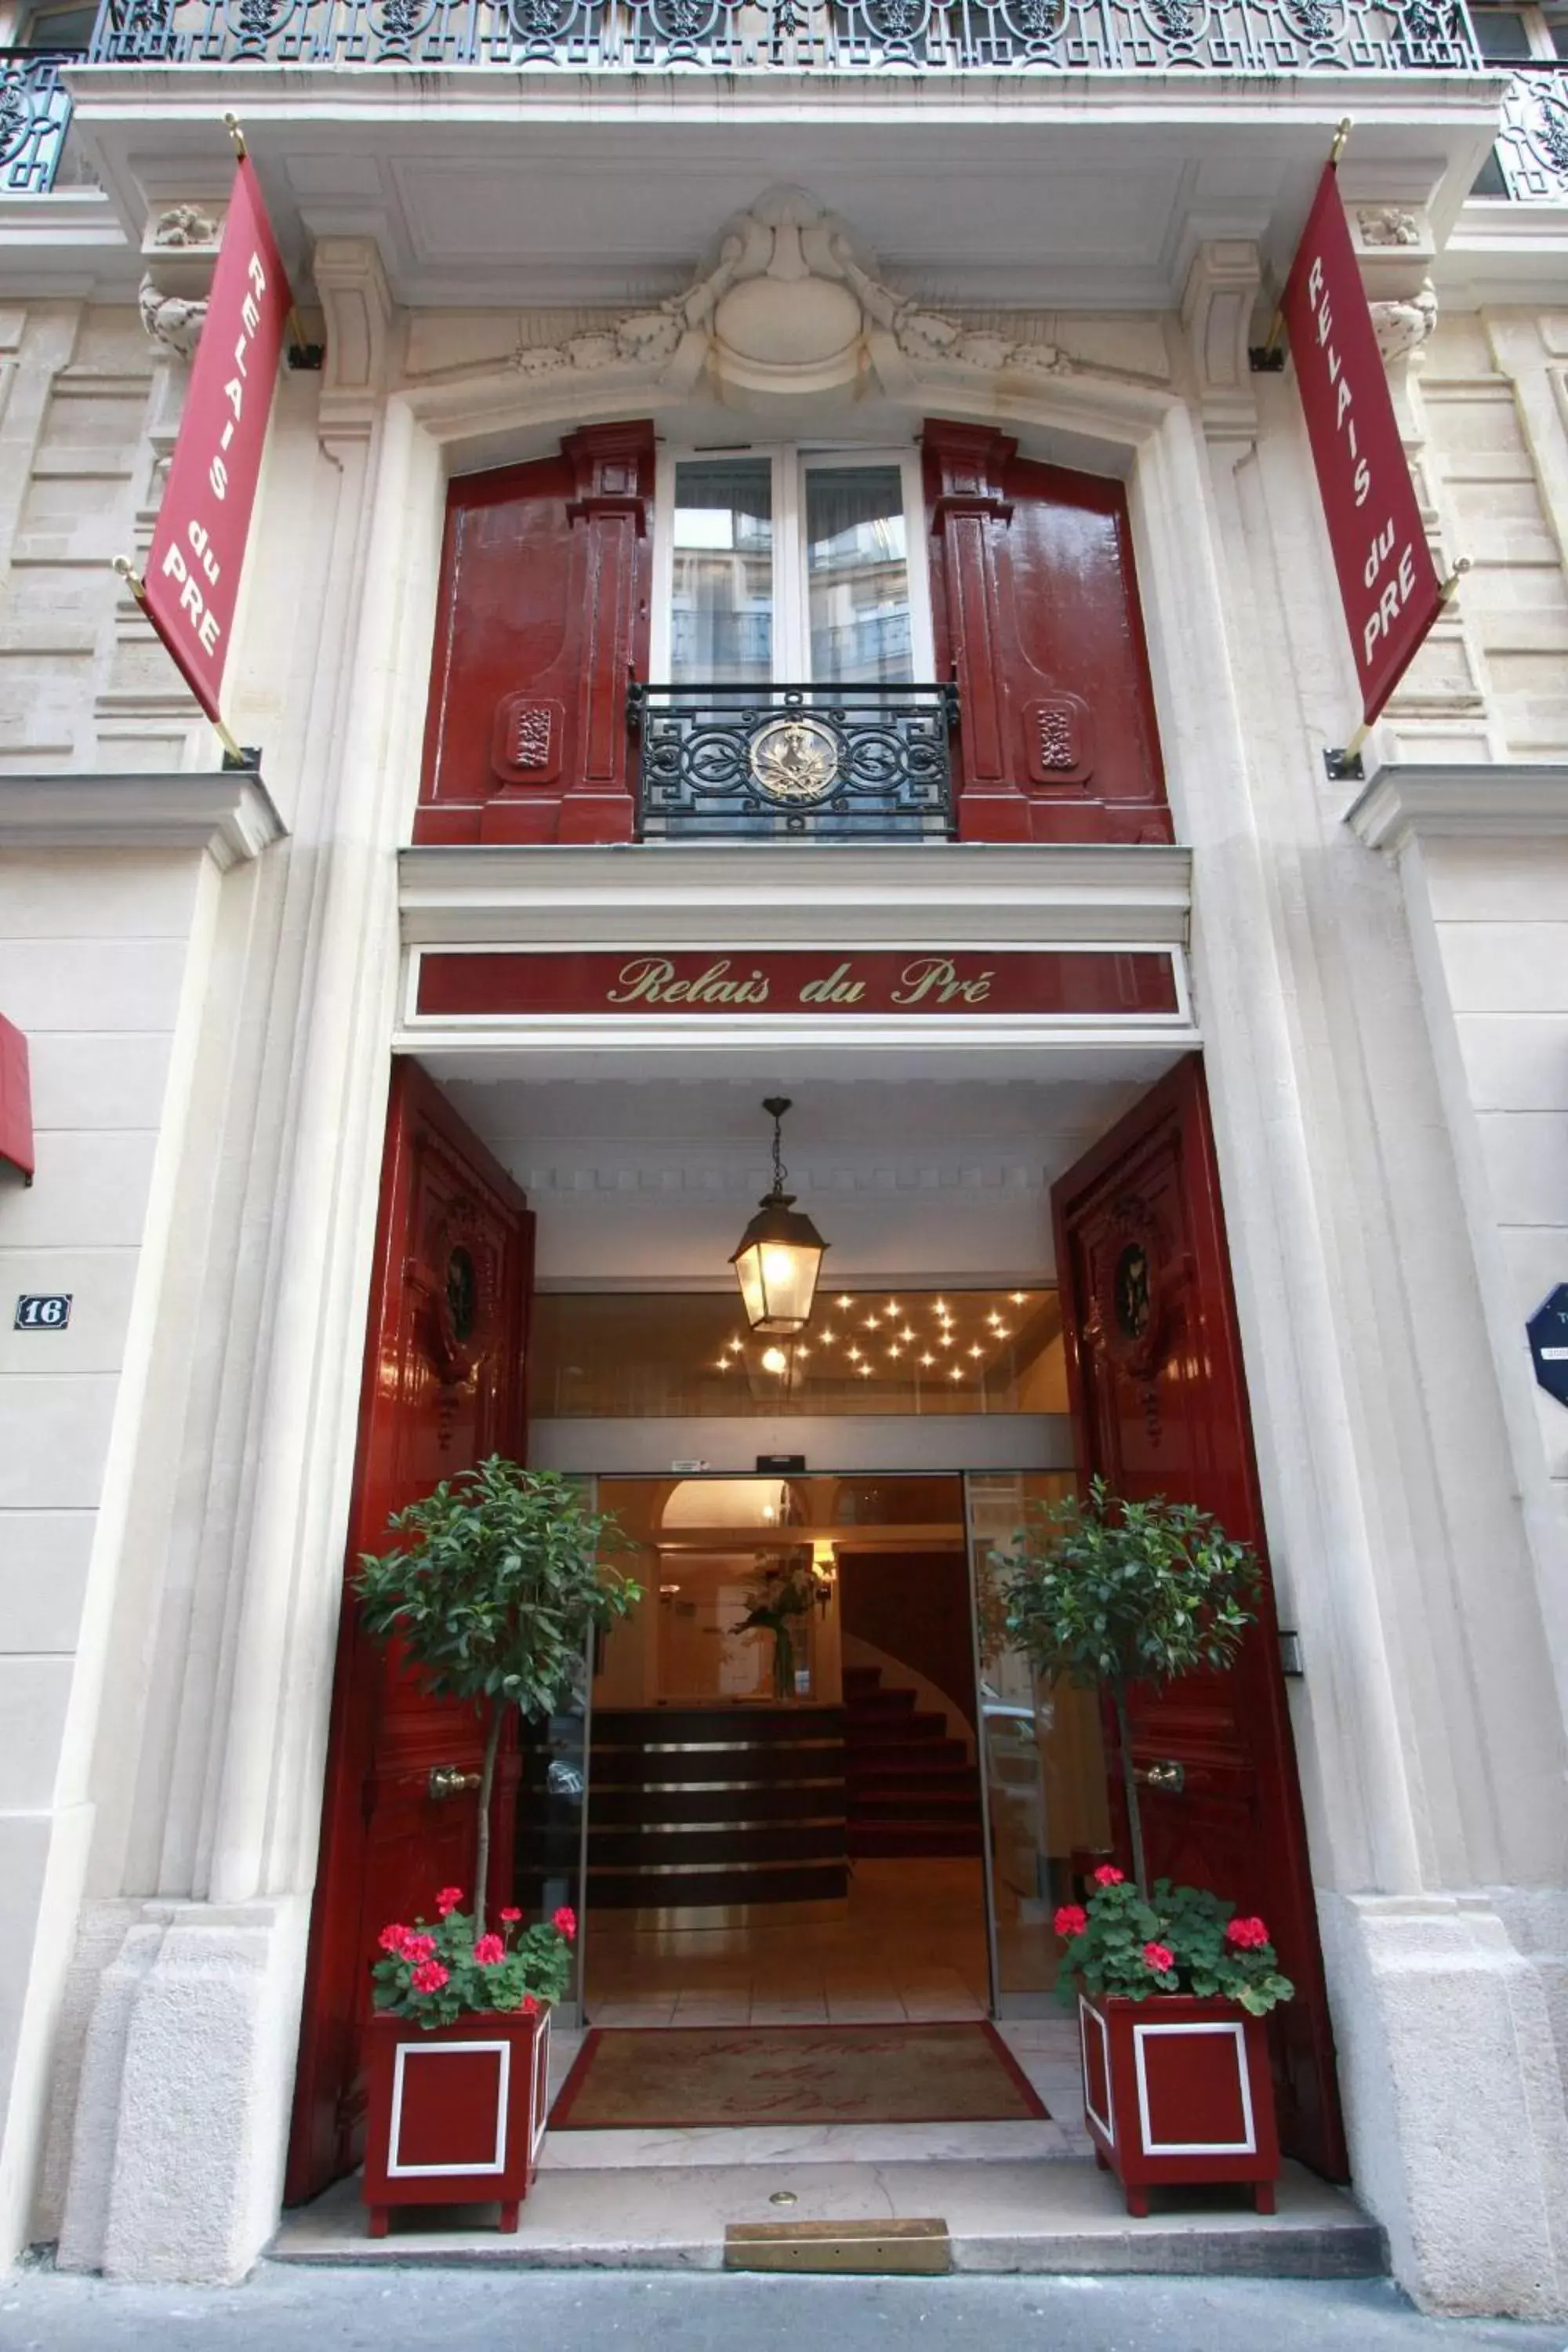 Facade/entrance in Relais du Pré